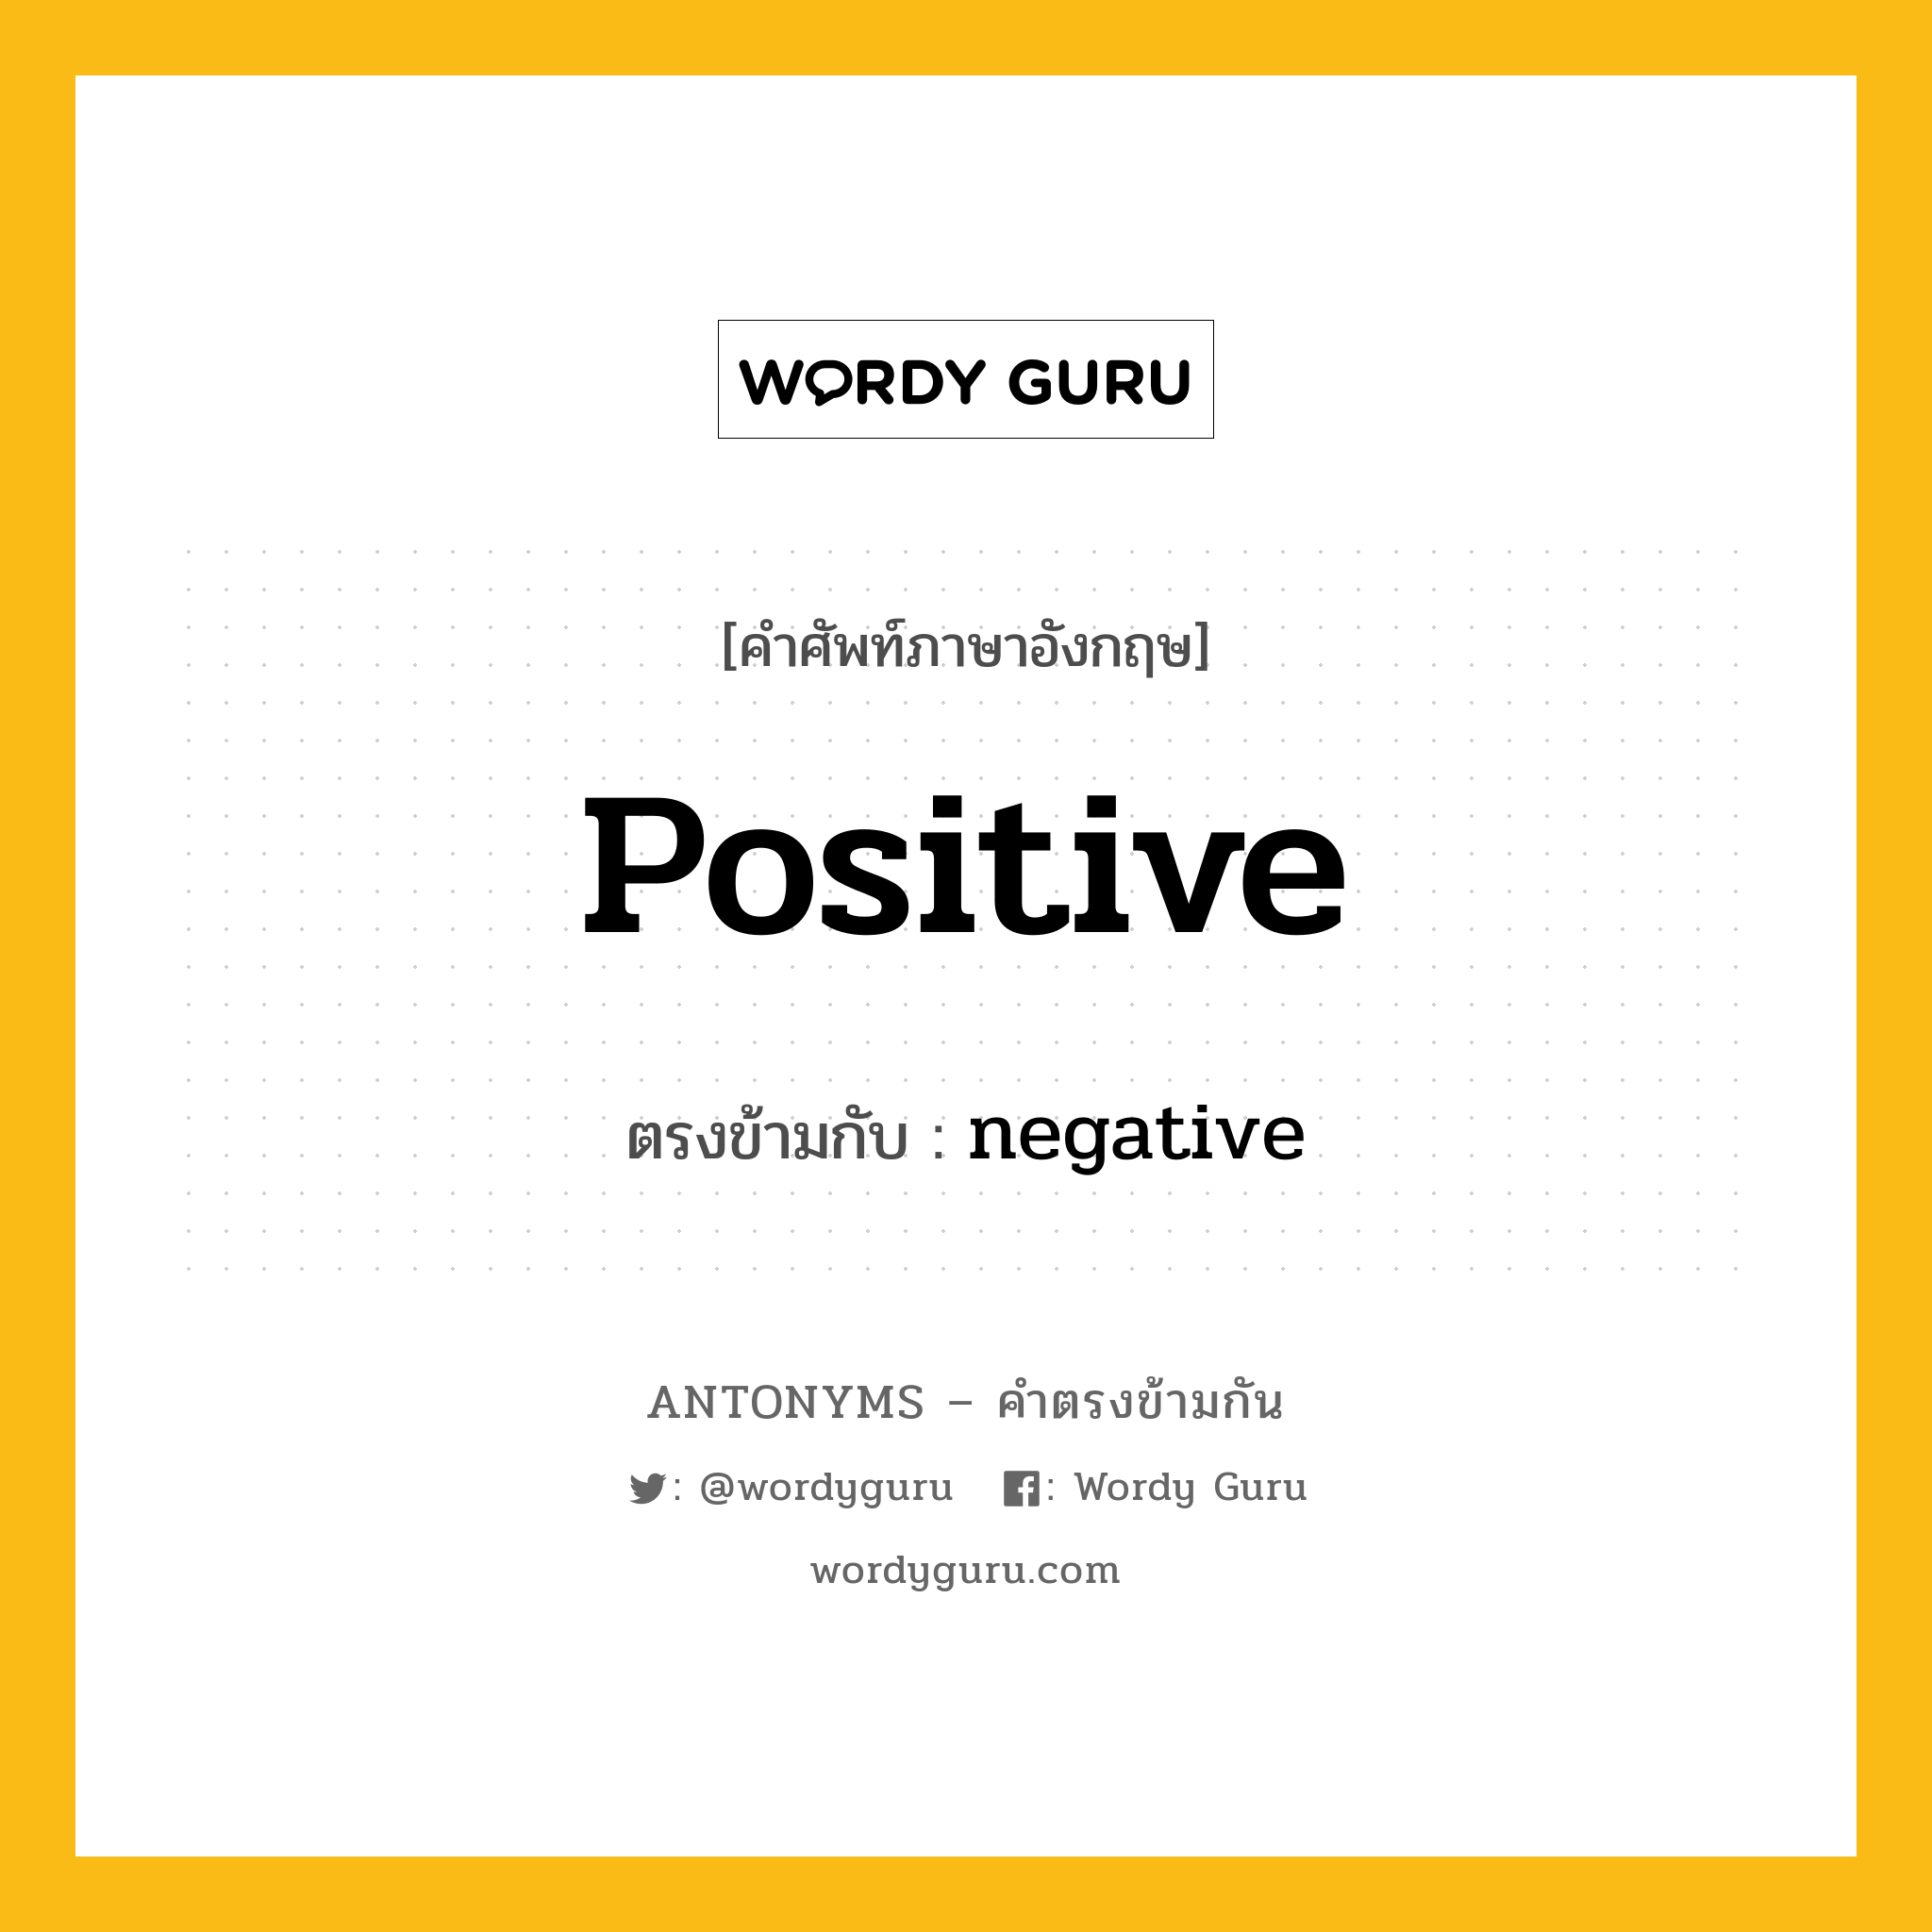 positive เป็นคำตรงข้ามกับคำไหนบ้าง?, คำศัพท์ภาษาอังกฤษ positive ตรงข้ามกับ negative หมวด negative